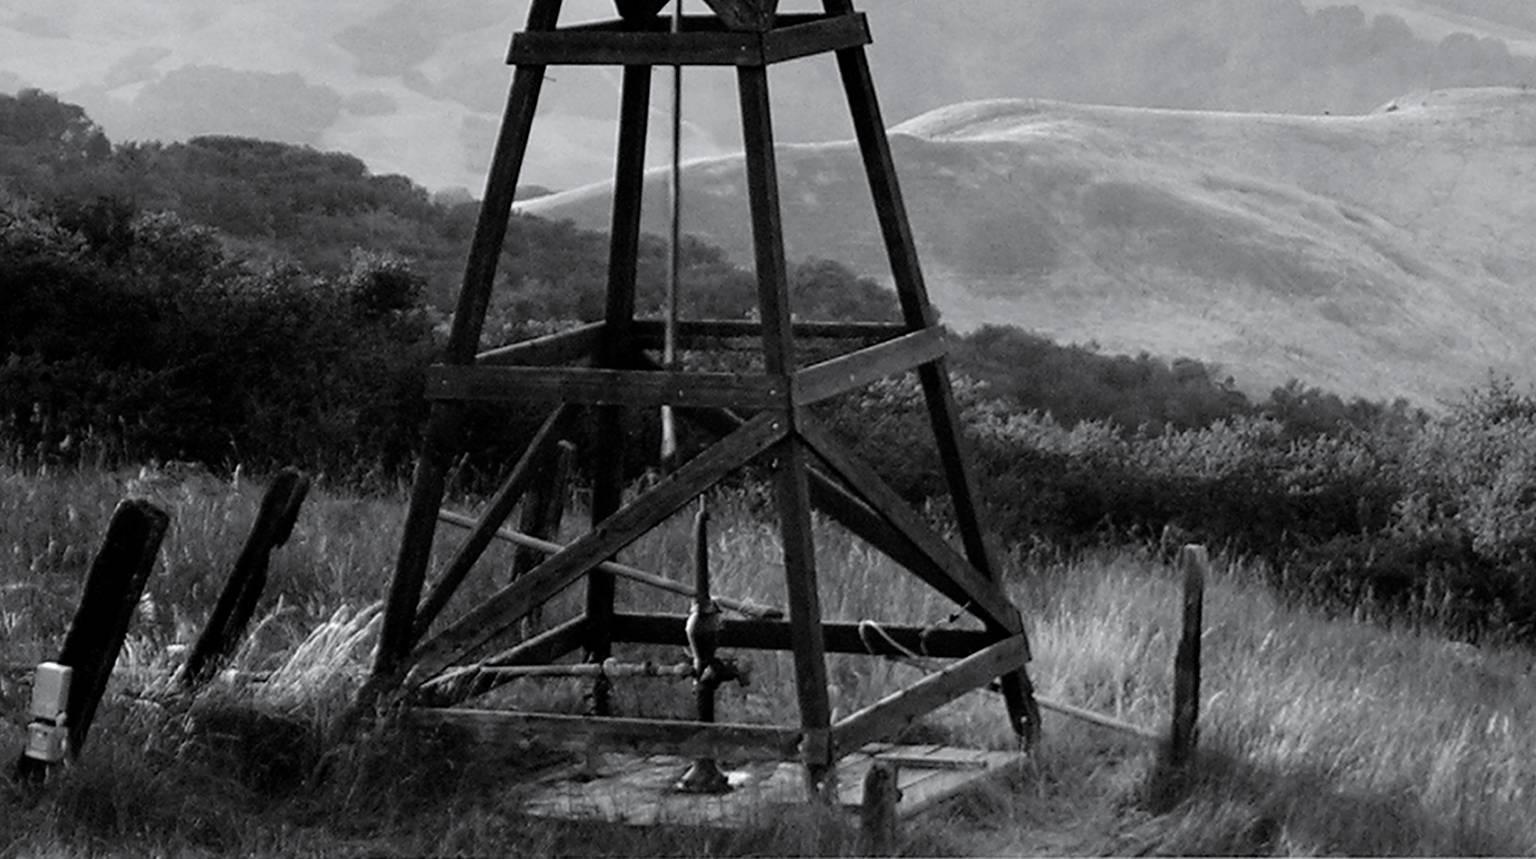 Windmill - Photograph by Douglas Busch